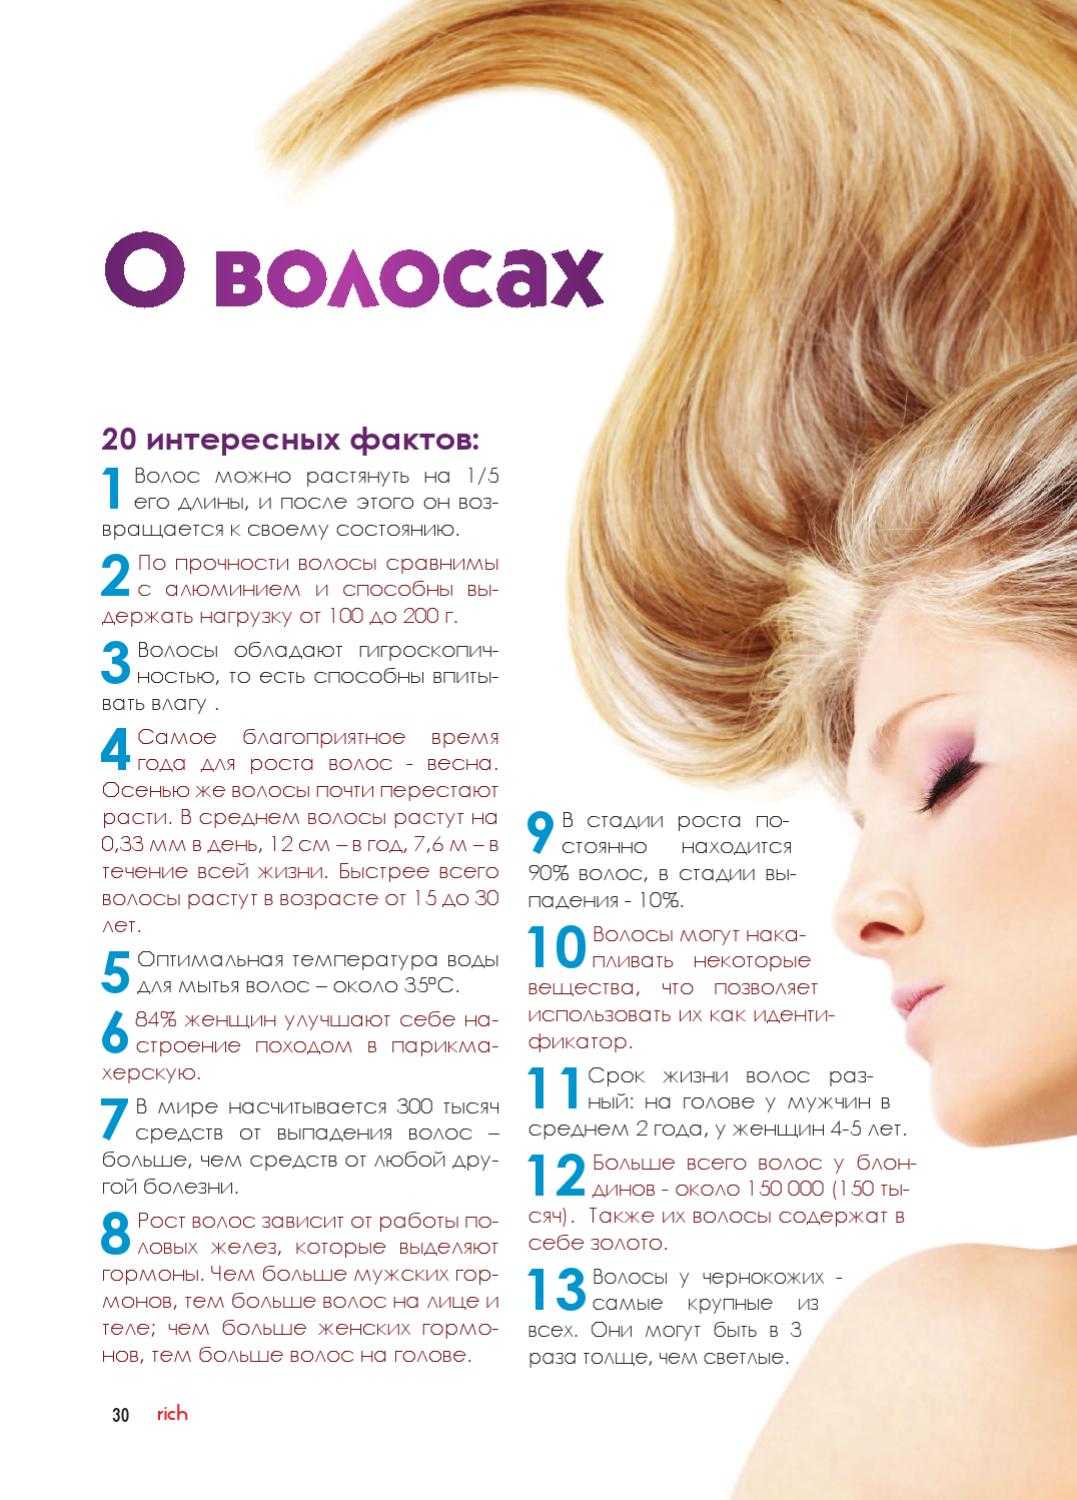 12 лучших кондиционеров для волос